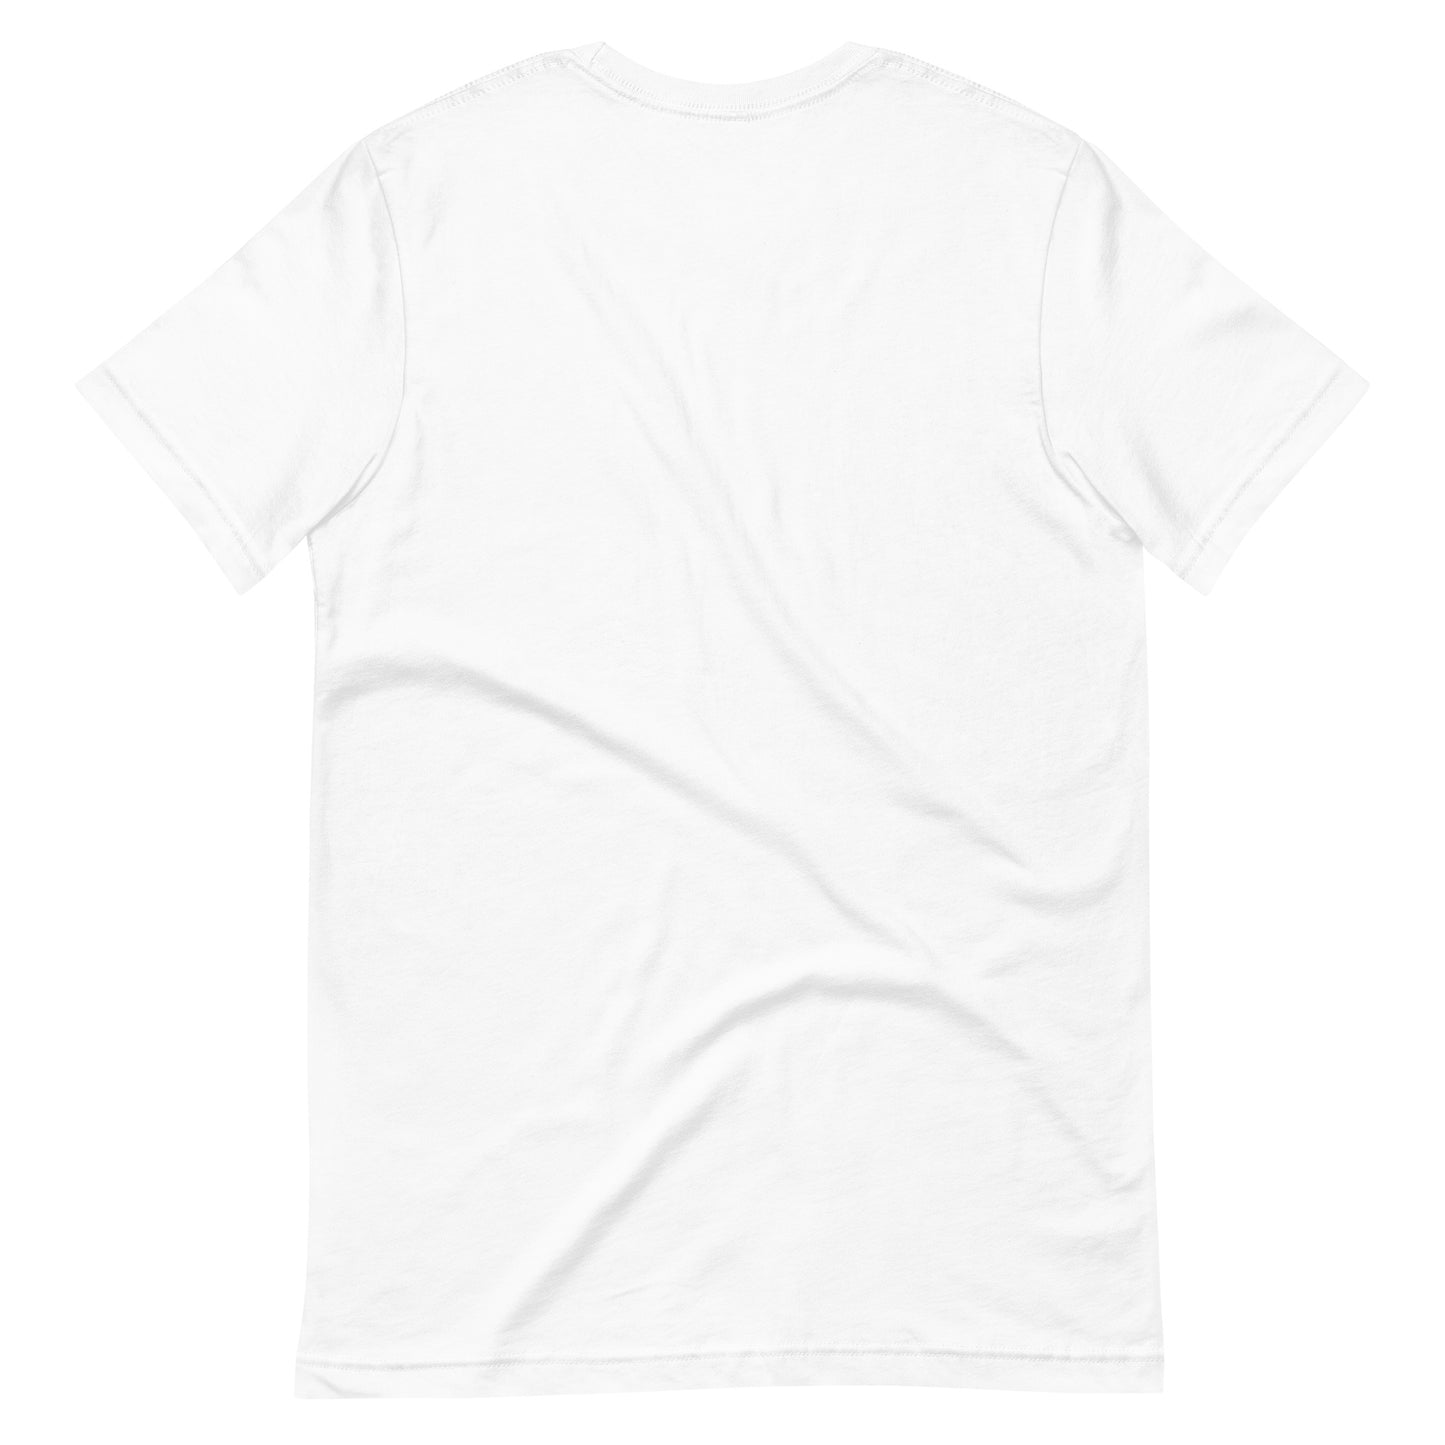 Aloha Unisex T-Shirt